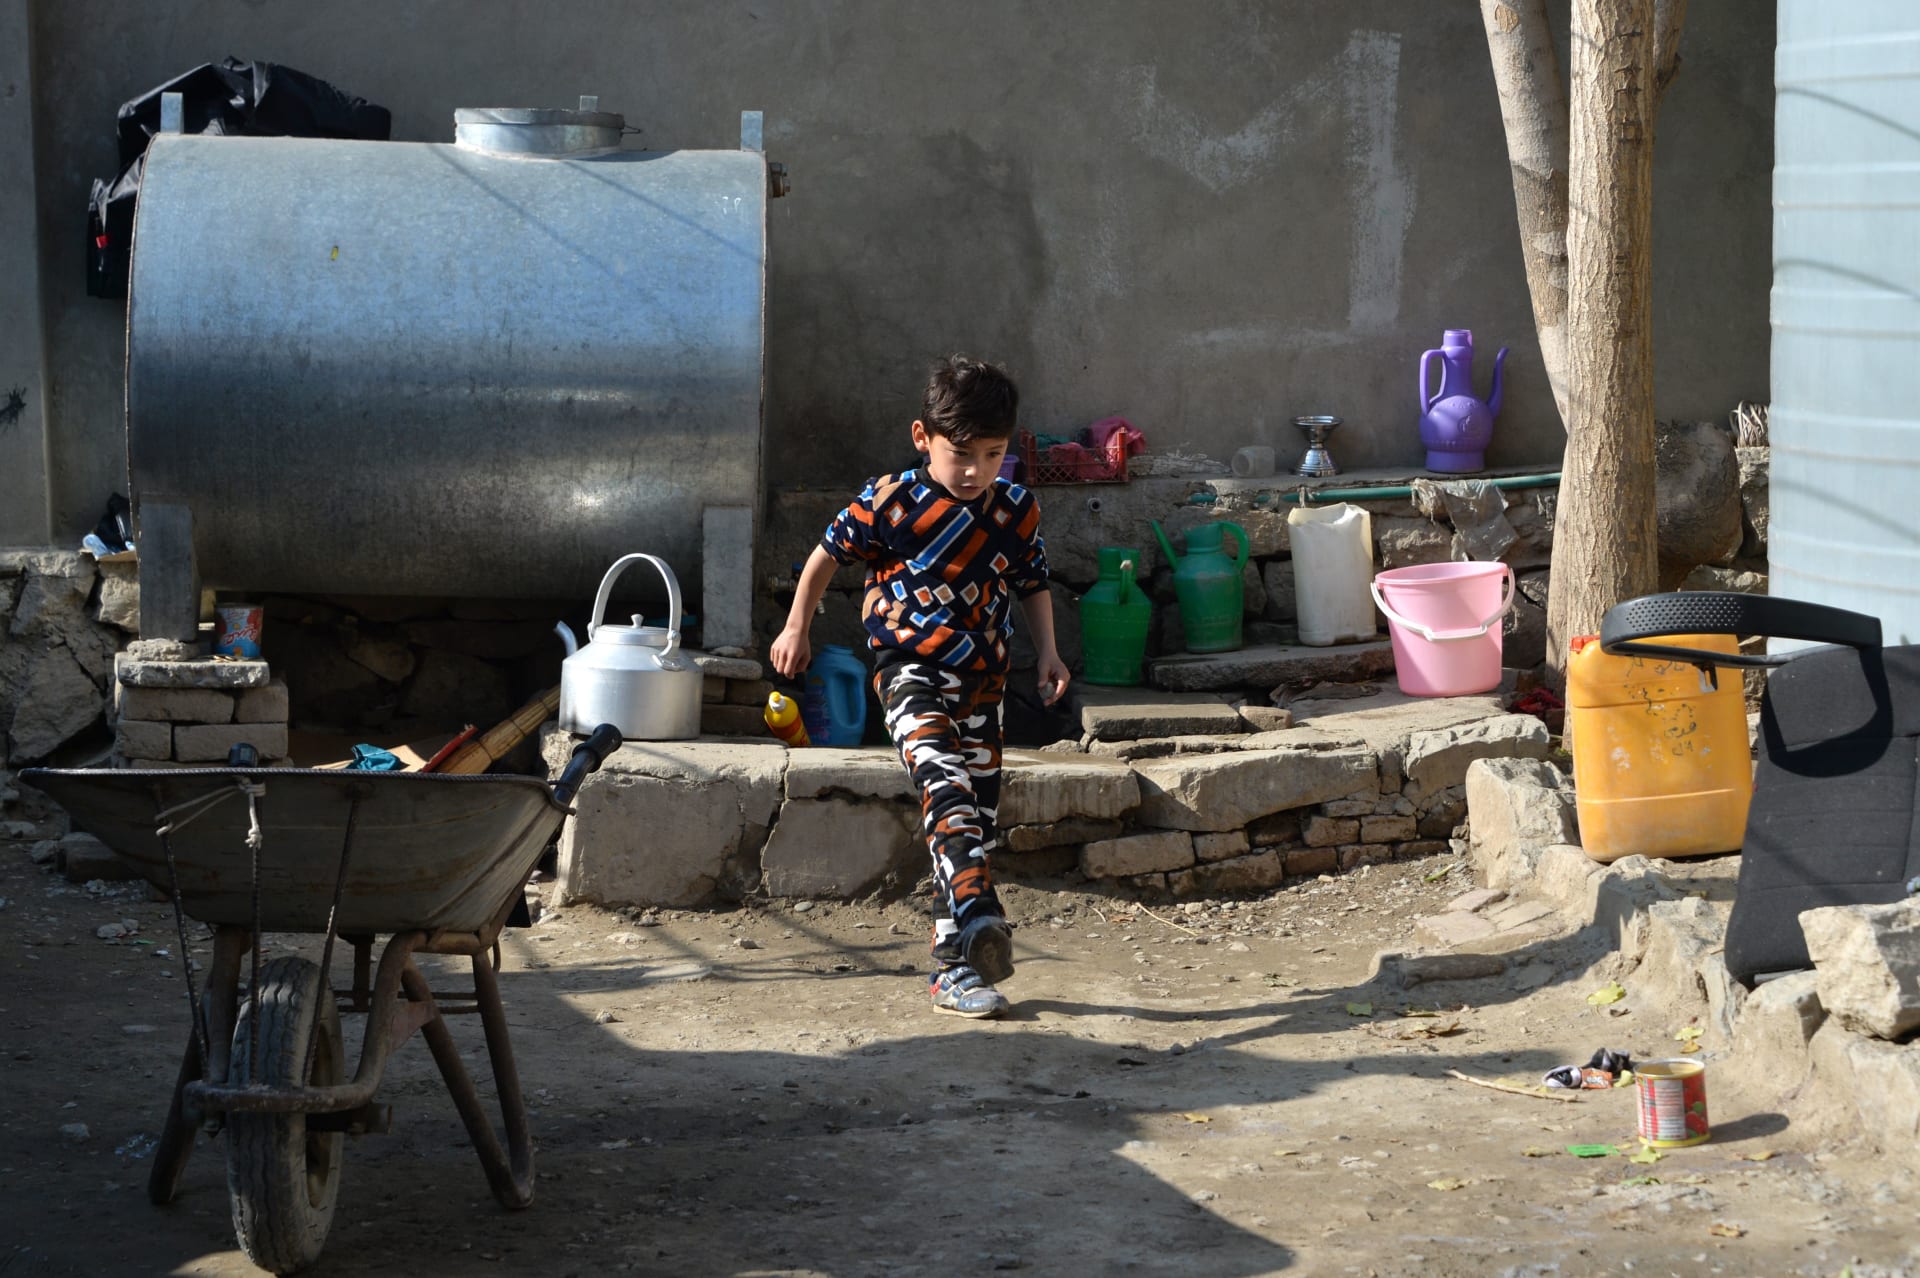 بعدما هرب من طالبان..هكذا يعيش "الطفل ميسي" بأفغانستان